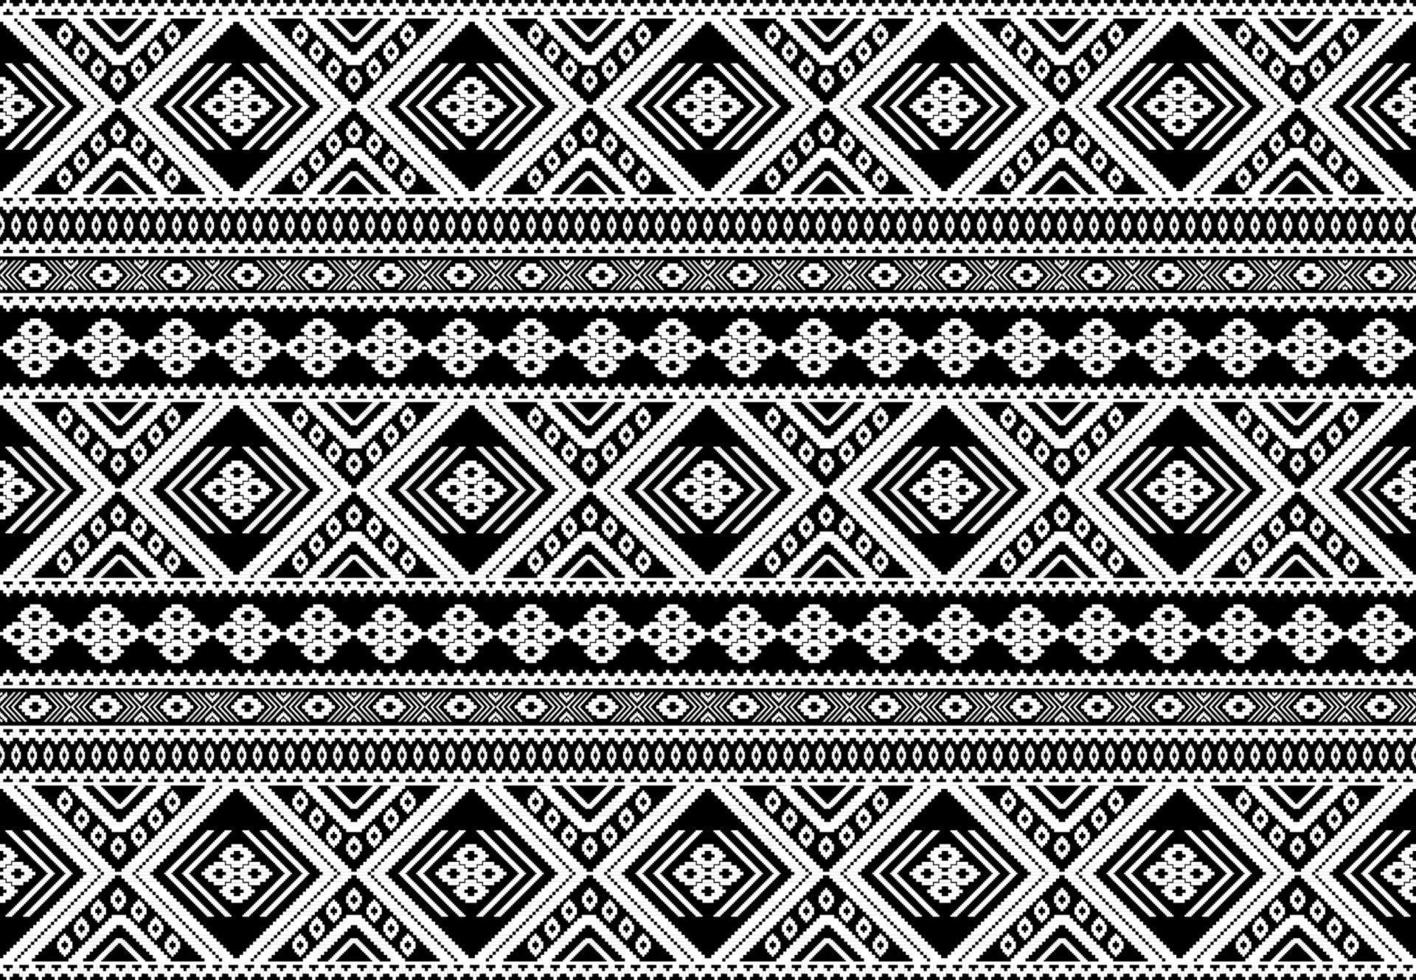 padrão sem emenda étnico asteca. geométrico ikat tradicional nativo. design para plano de fundo,tapete,papel de parede,vestuário,embrulho,batic,tecido,vetor estilo illustraion.embroidery. vetor